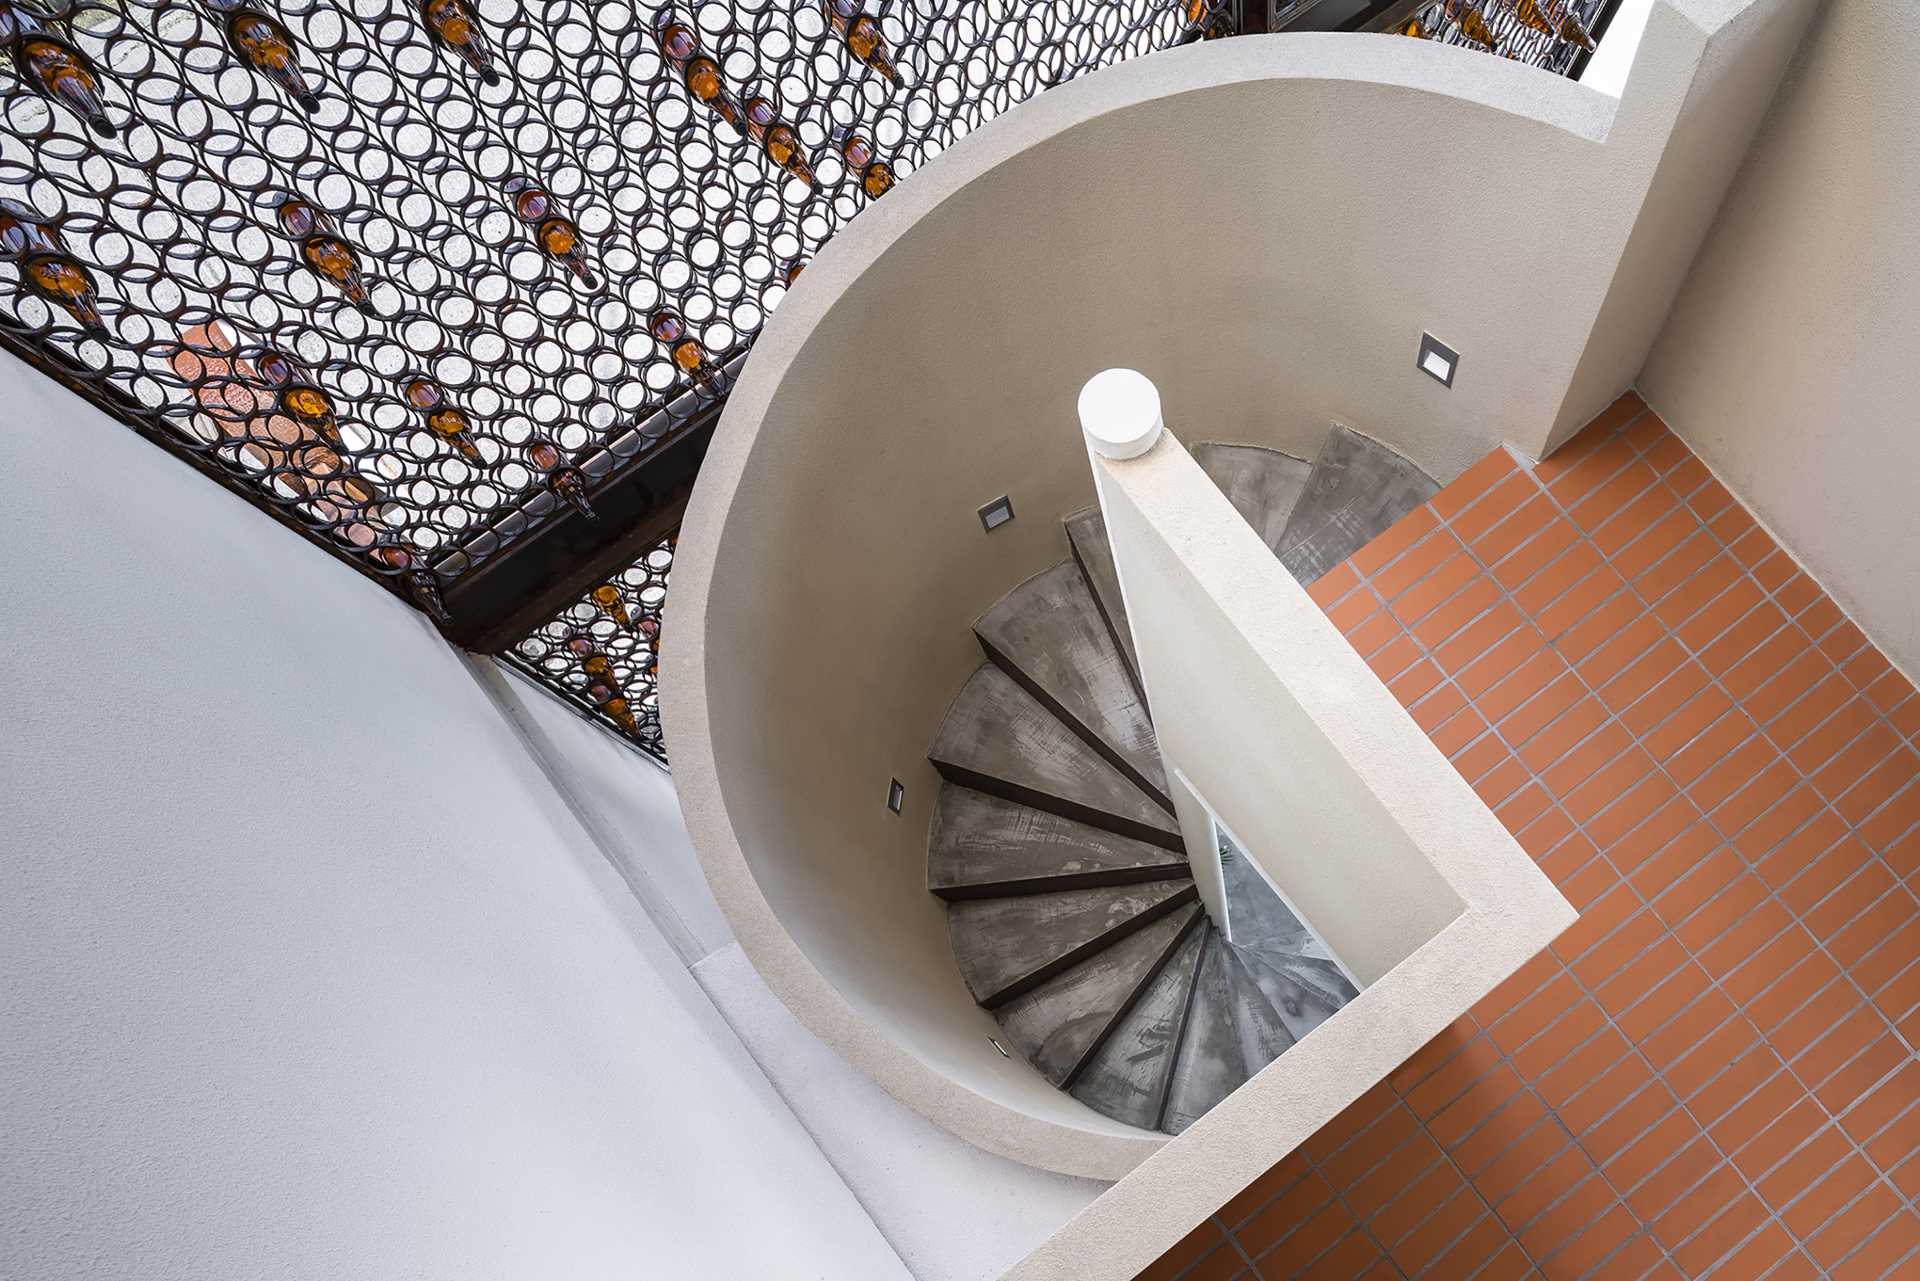 یک راه پله مارپیچ از طبقه اصلی این کافه به طبقه بالا منتهی می شود و نمای نزدیک از نما را ارائه می دهد.